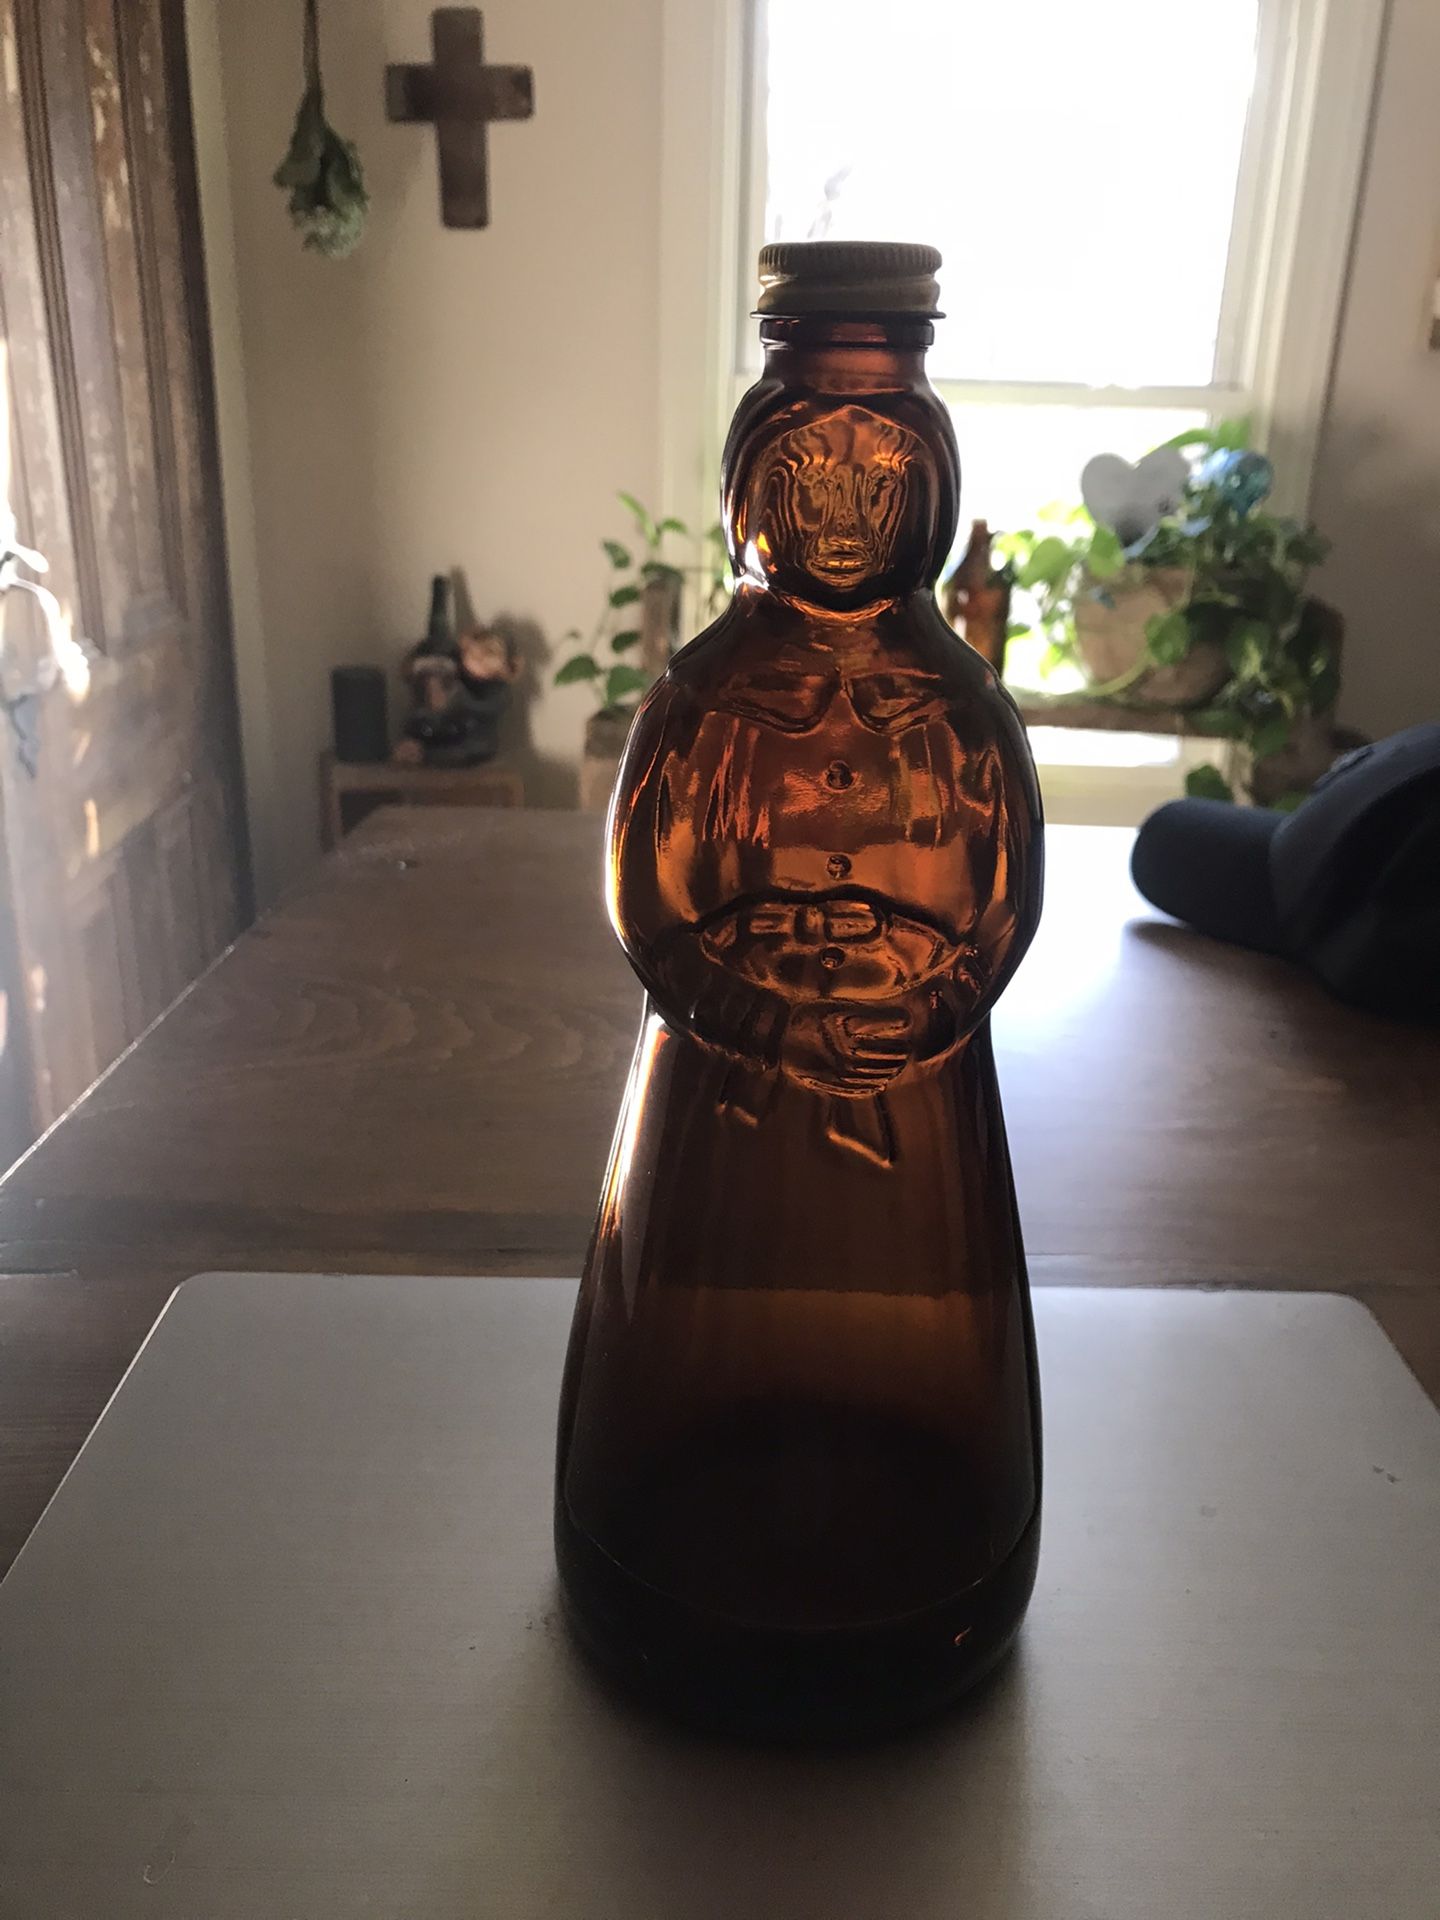 Antique Aunt Jemima Syrup Bottle 